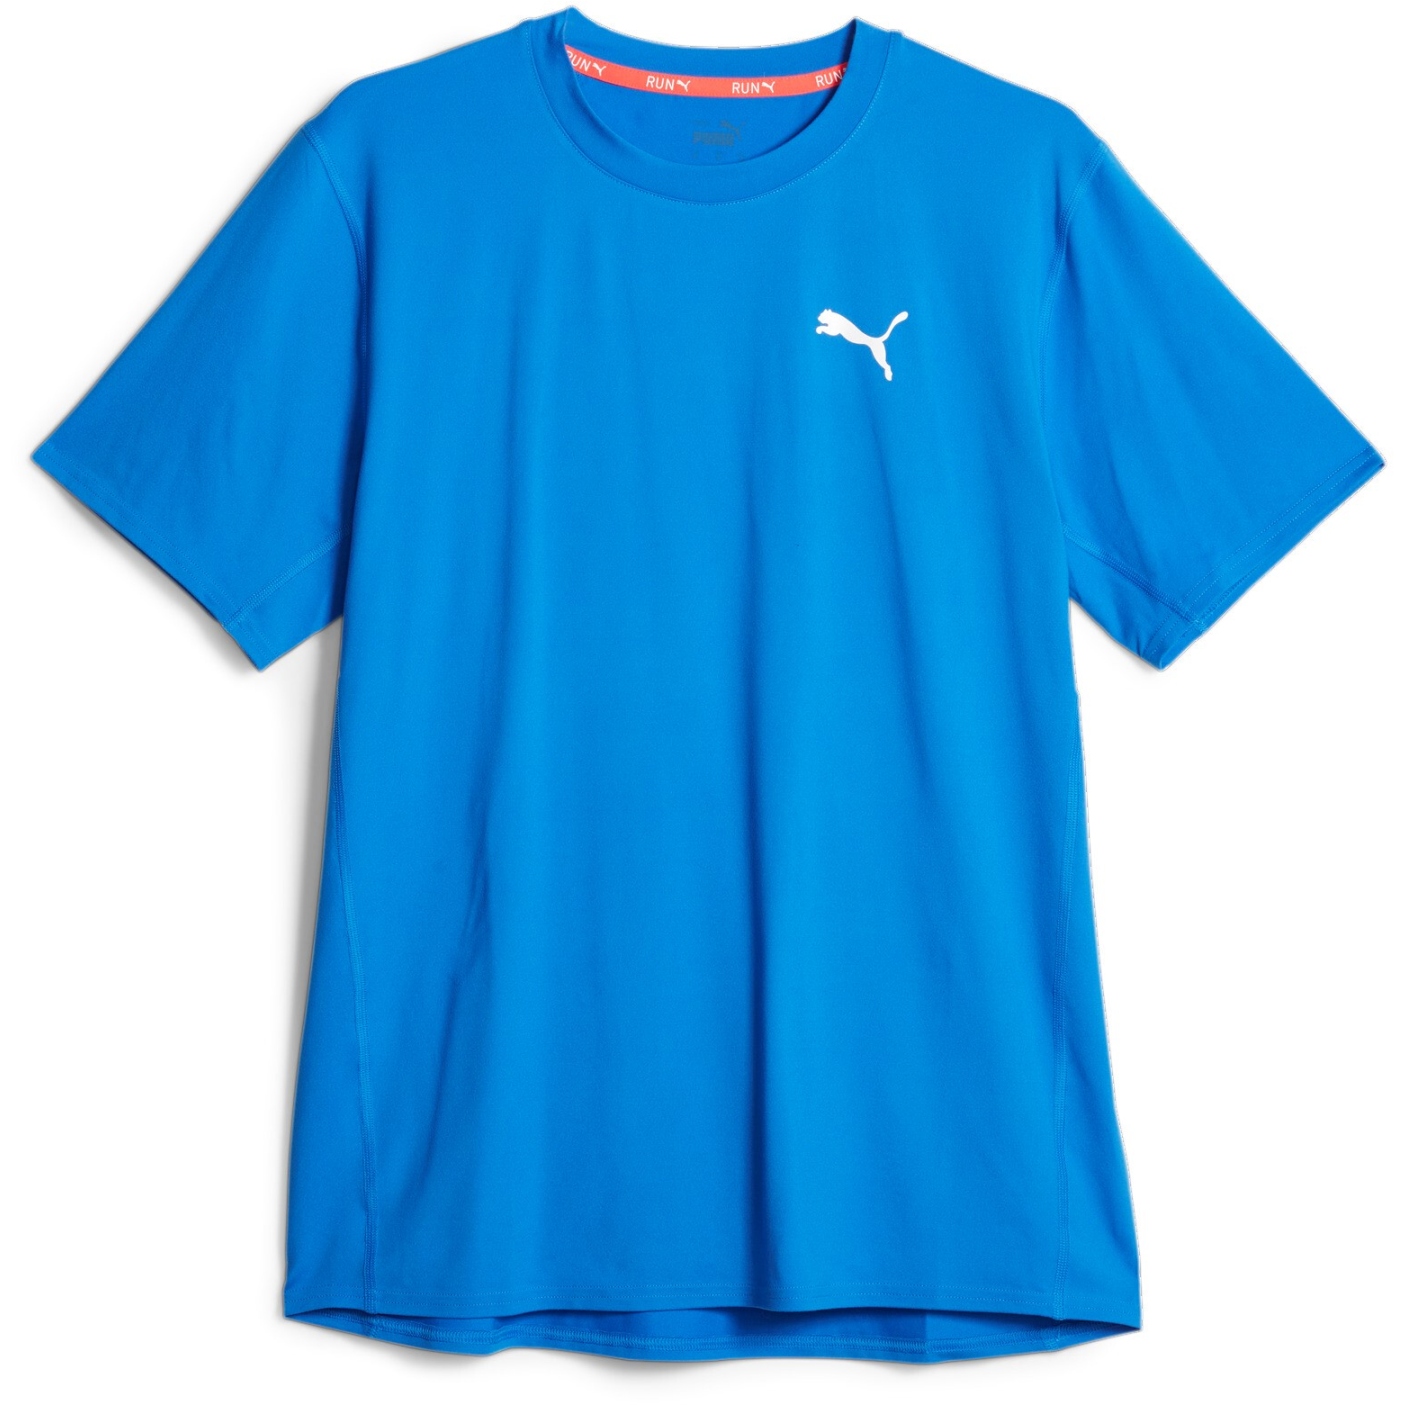 Produktbild von Puma Cloudspun Lauf-T-Shirt Herren - Ultra Blue